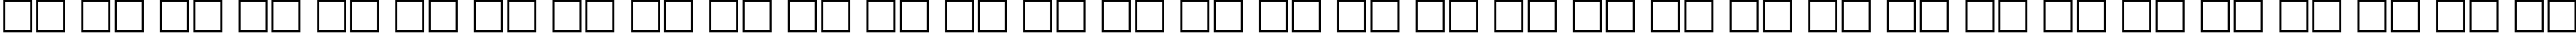 Пример написания русского алфавита шрифтом Cricket110